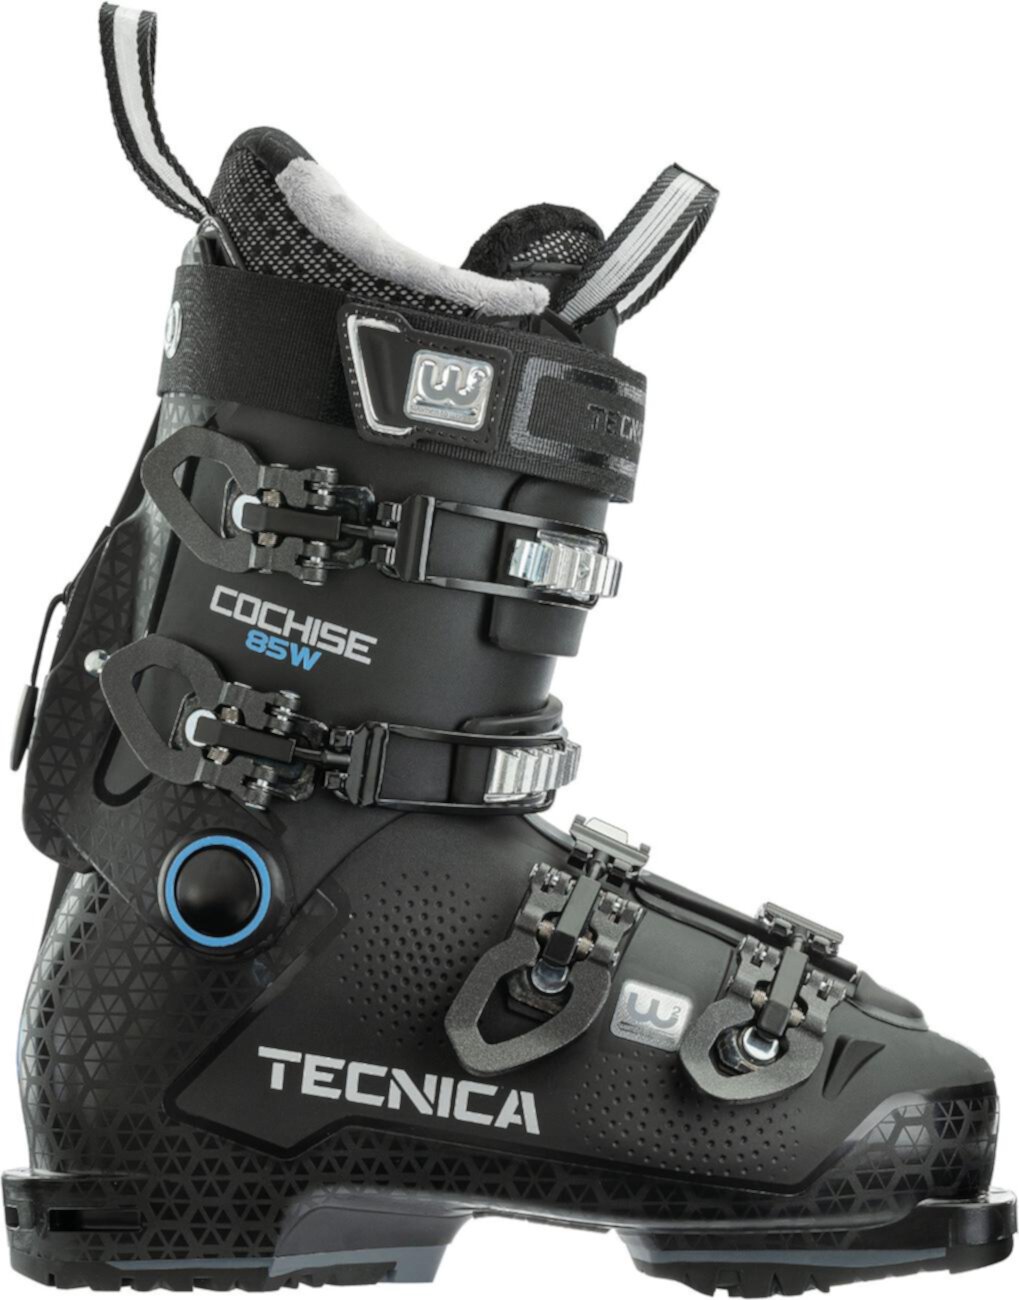 Лыжные ботинки Cochise 85 W GW - женские - 2020/2021 Tecnica